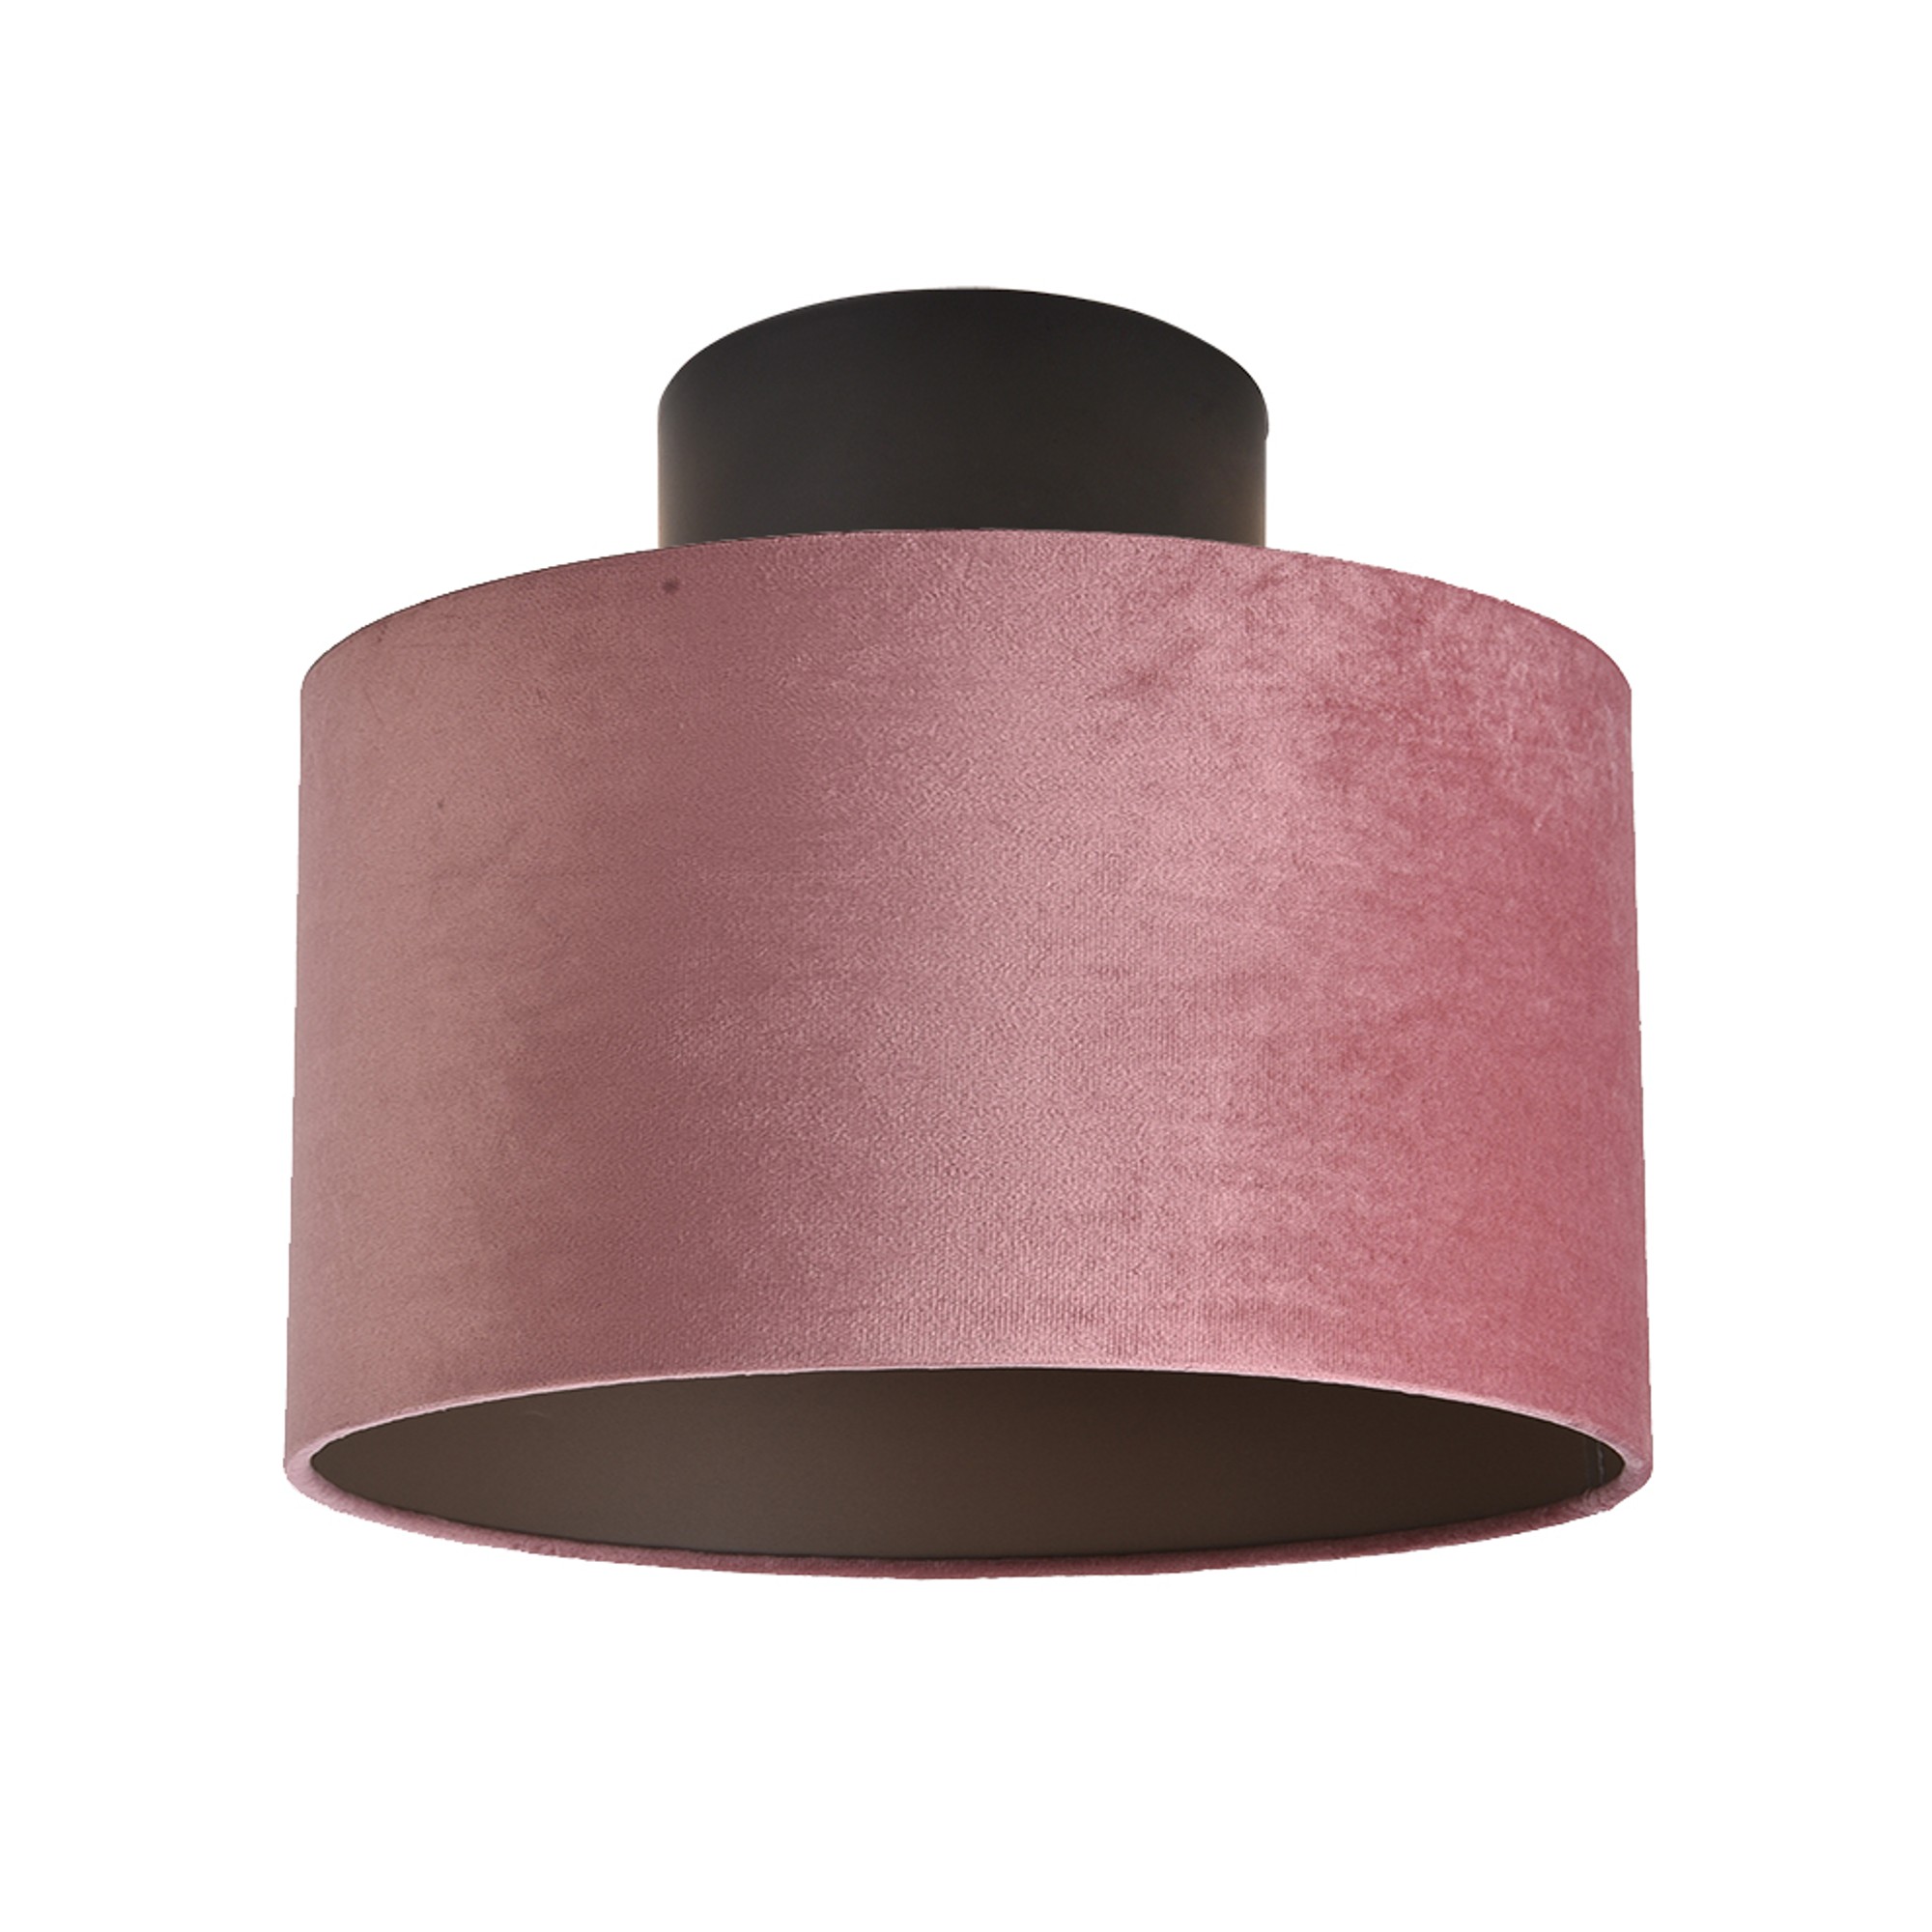 Ceiling lamp FocusLight GEM 30cm, 1xE27, pink